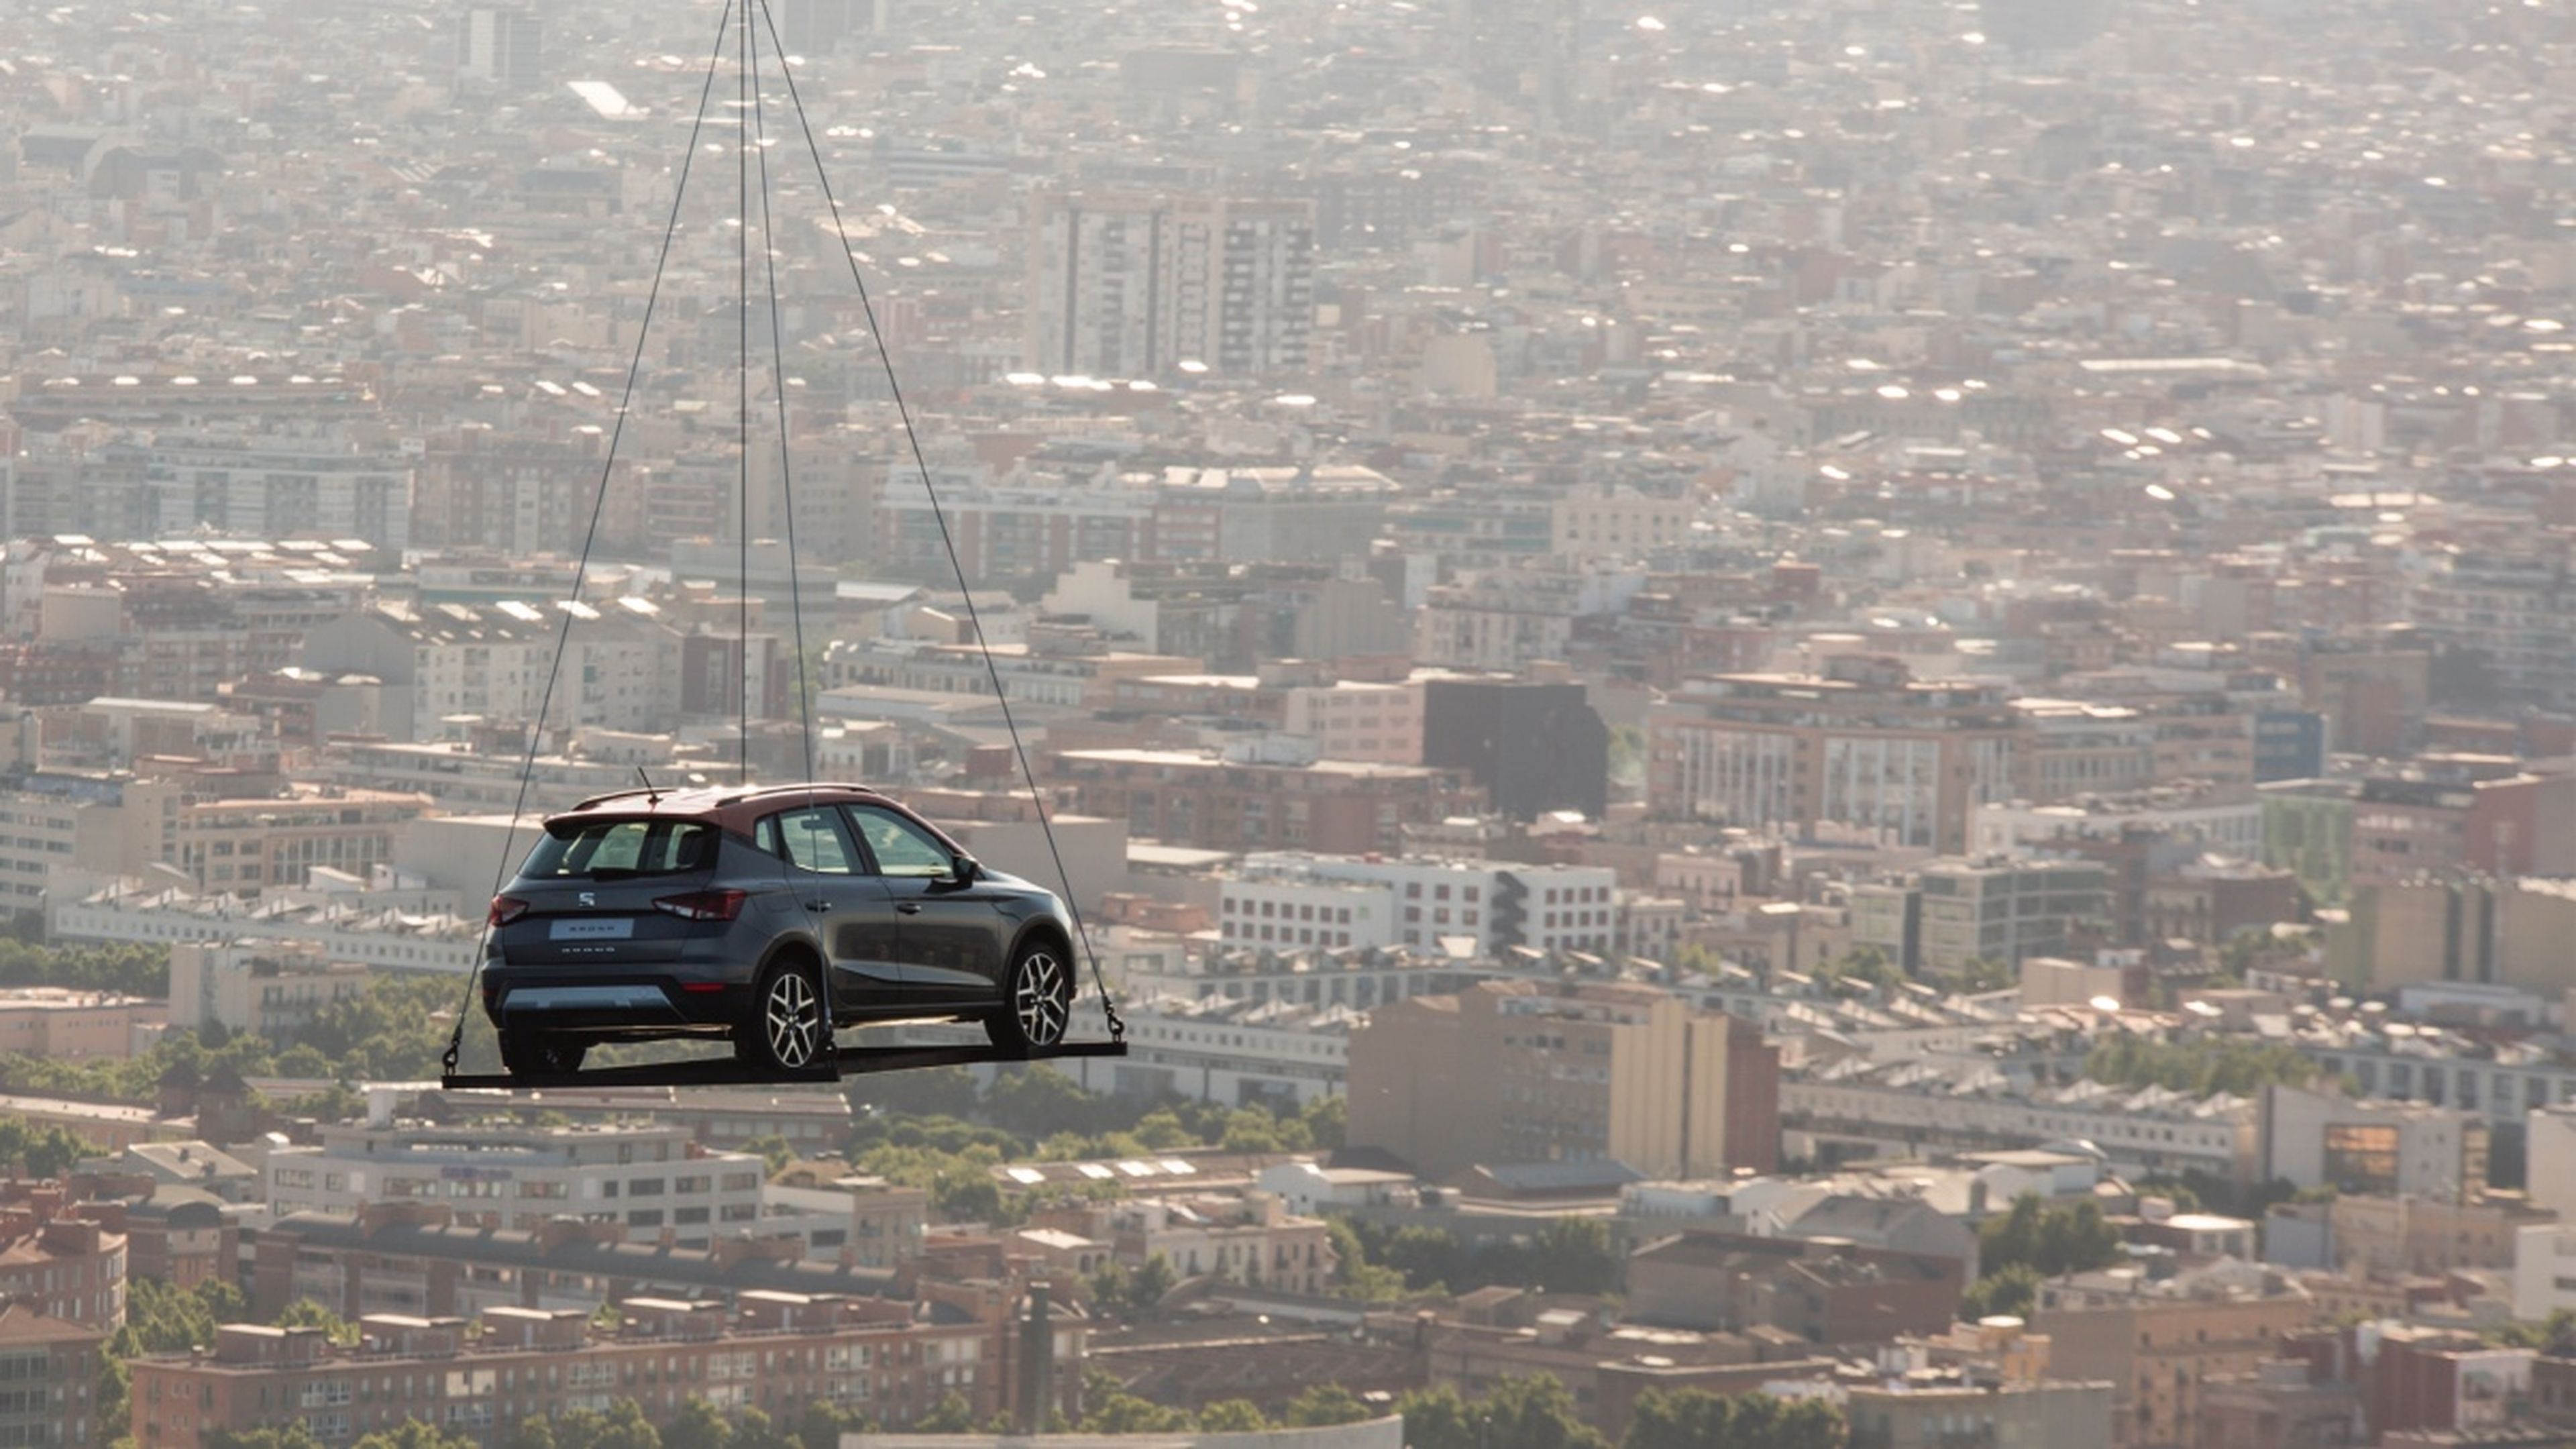 El Seat Arona se fabrica en Barcelona, cosa que se quiso remarcar en su campaña de lanzamiento